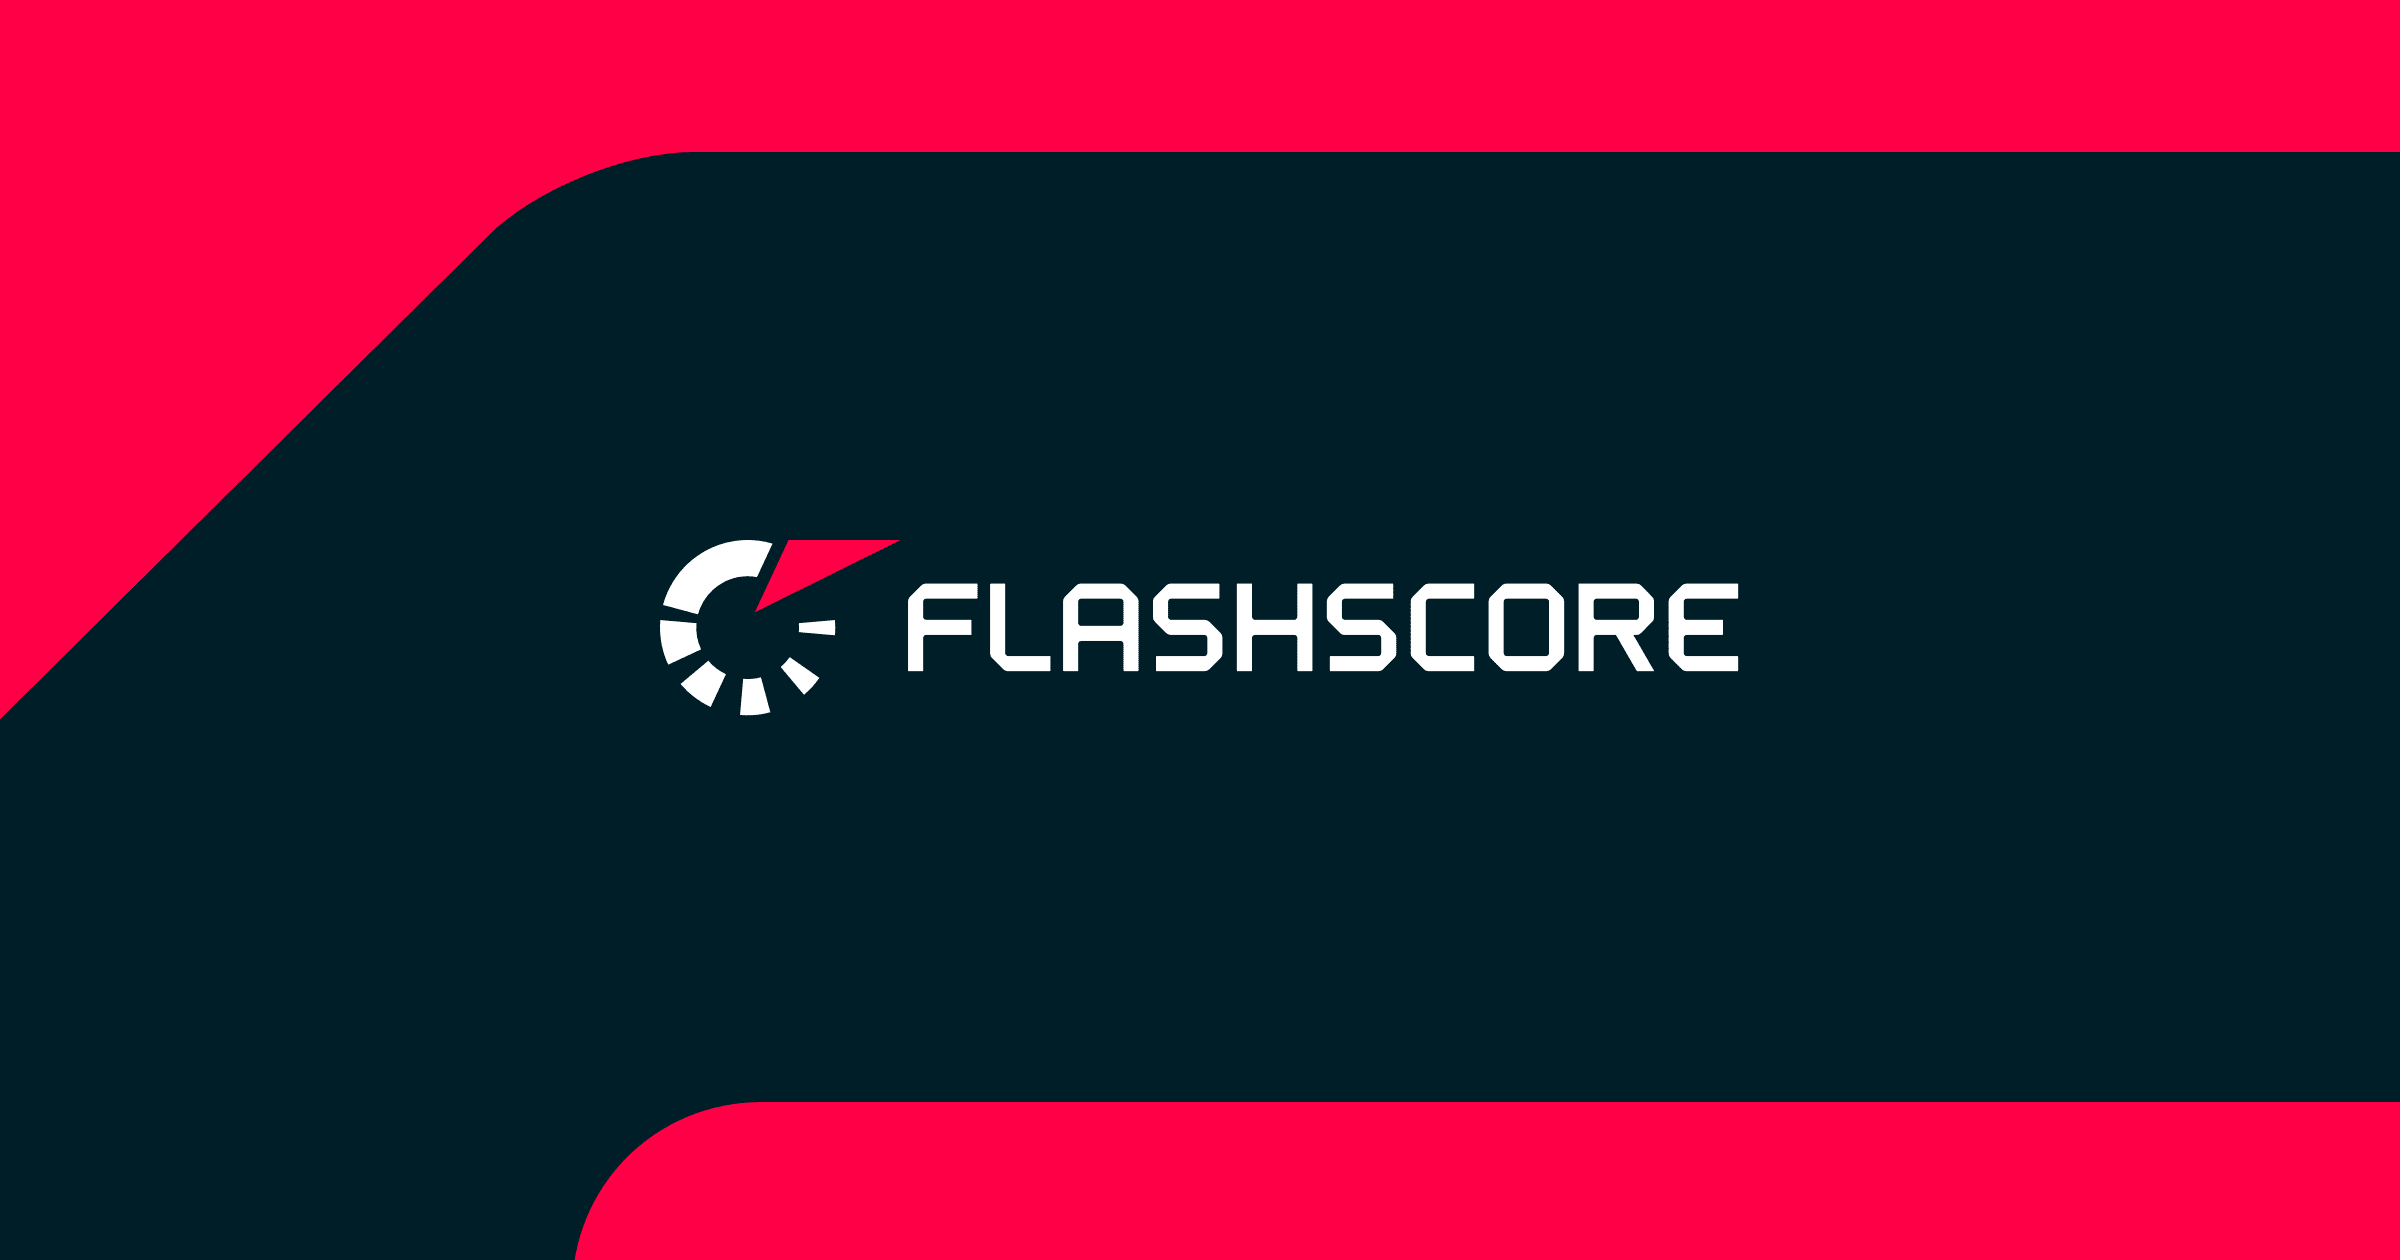 flashscore uk